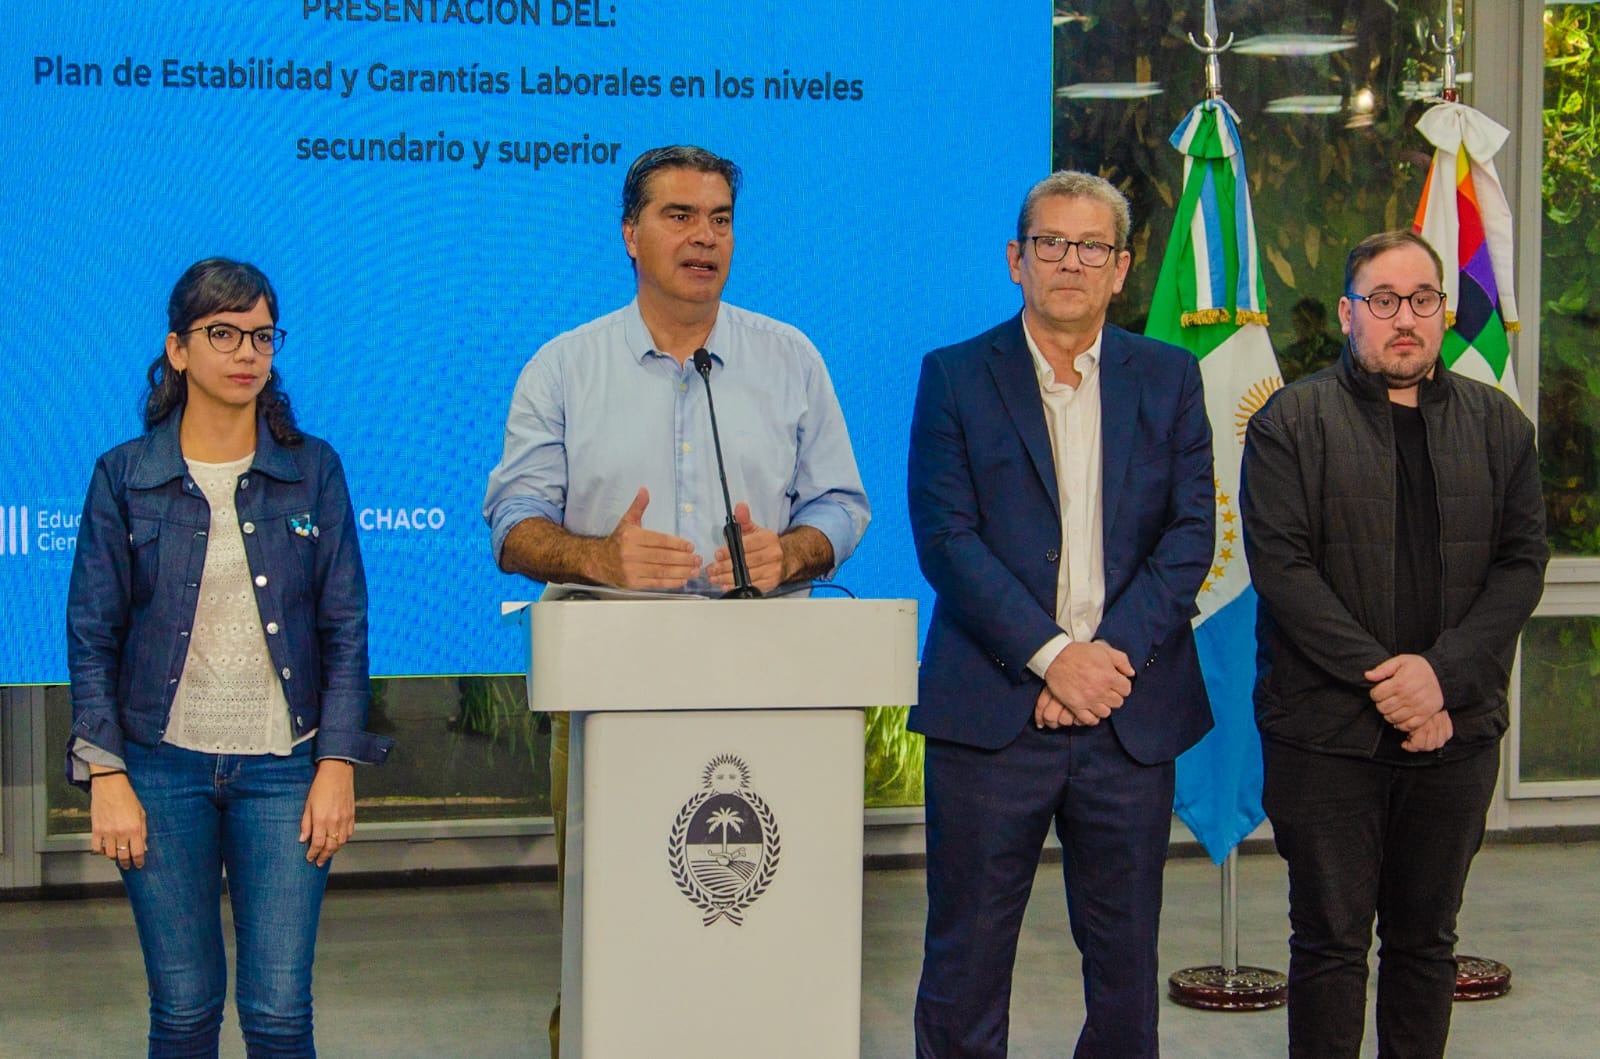 Chaco: El Programa de estabilidad y garantía laboral en los niveles secundario y superior fue presentado por el gobernador Jorge Capitanich